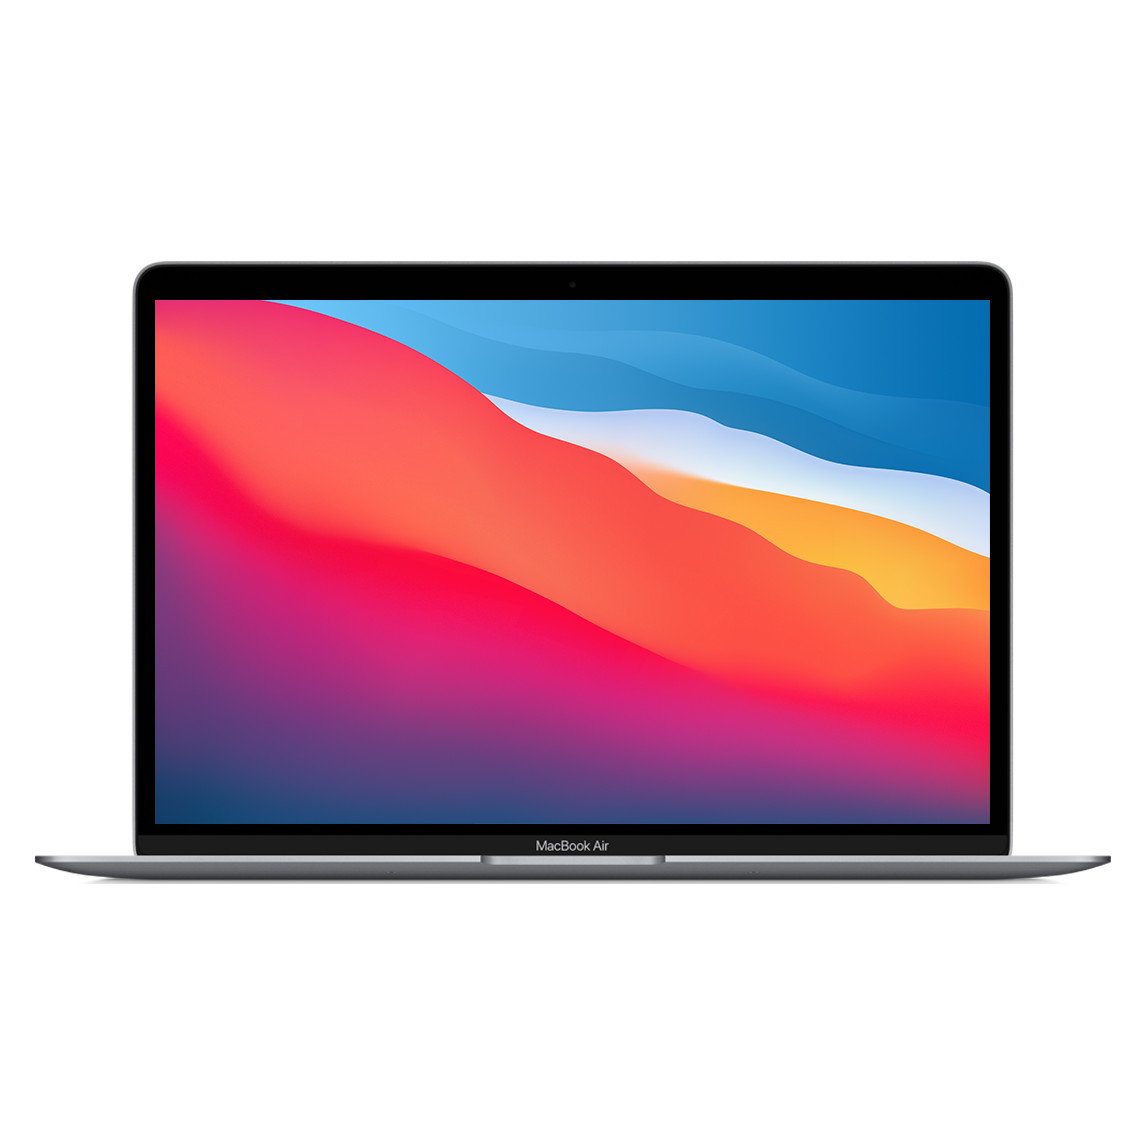 打開的 13.3 吋 MacBook Air，灰色外觀，展示纖薄的邊框、FaceTime HD 相機、圓邊設計